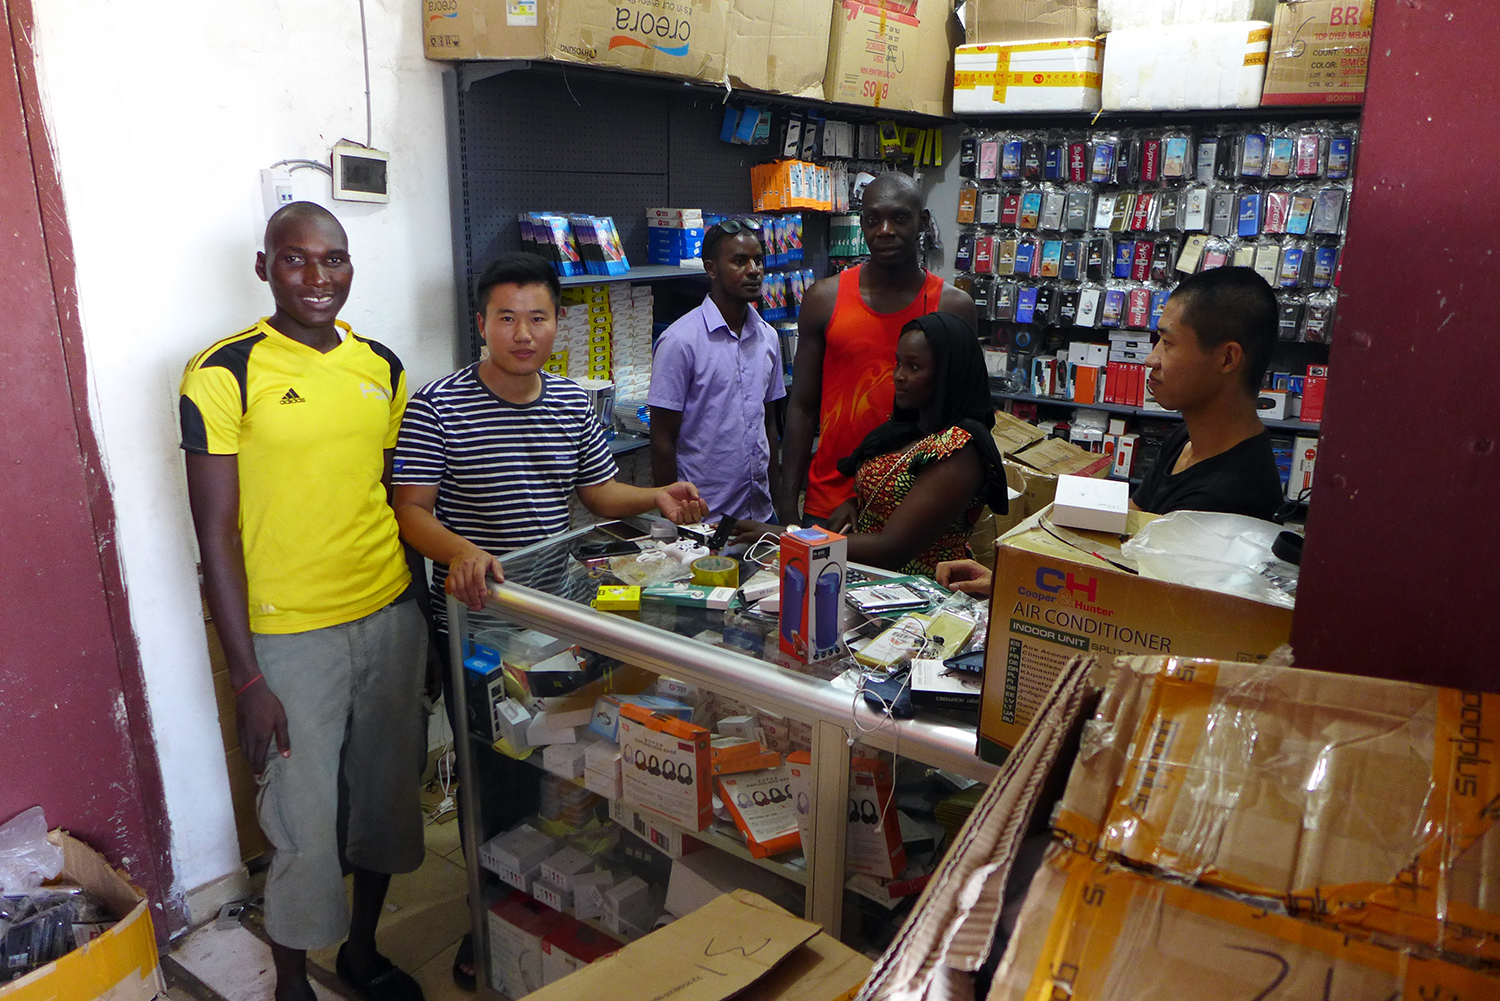 Abdoulaye BALDÉ et Monsieur Ly (à gauche sur la photo) devant le magasin d’accessoires pour téléphones portables.